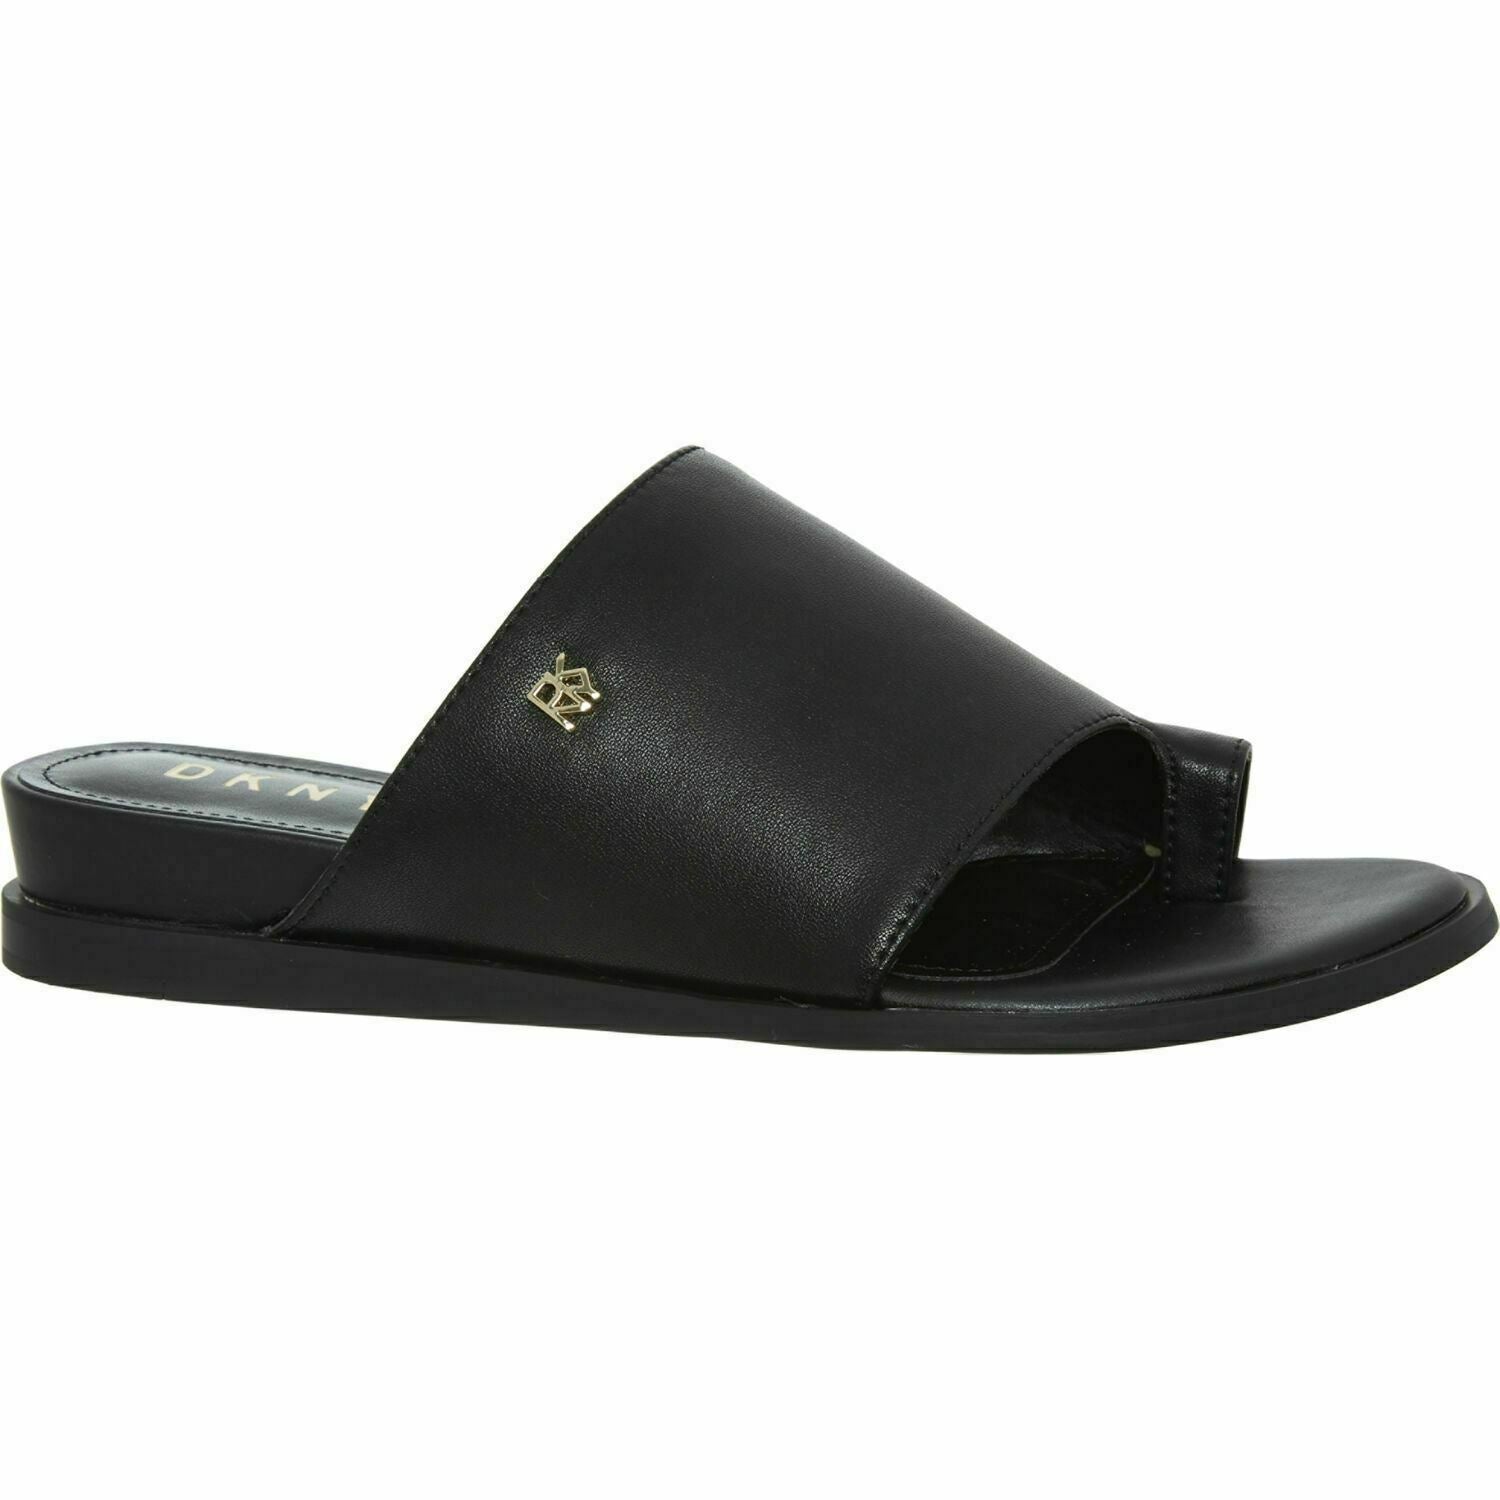 DKNY Womens DAZ Genuine Leather Toe Loop Sliders Sandals Black UK 5.5 EU 38.5